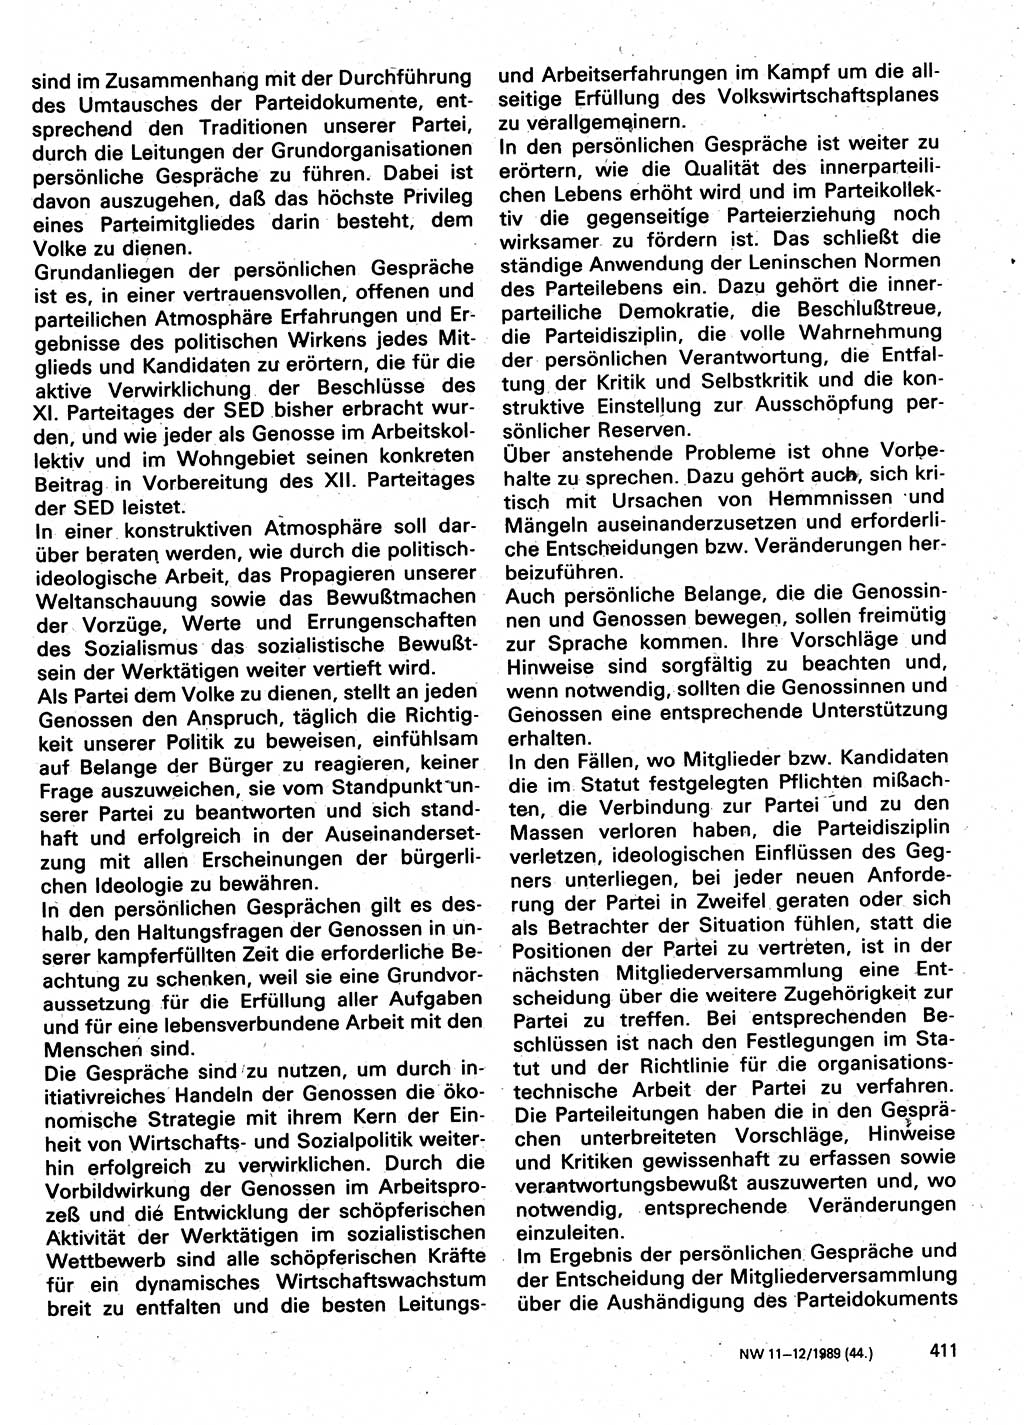 Neuer Weg (NW), Organ des Zentralkomitees (ZK) der SED (Sozialistische Einheitspartei Deutschlands) für Fragen des Parteilebens, 44. Jahrgang [Deutsche Demokratische Republik (DDR)] 1989, Seite 411 (NW ZK SED DDR 1989, S. 411)